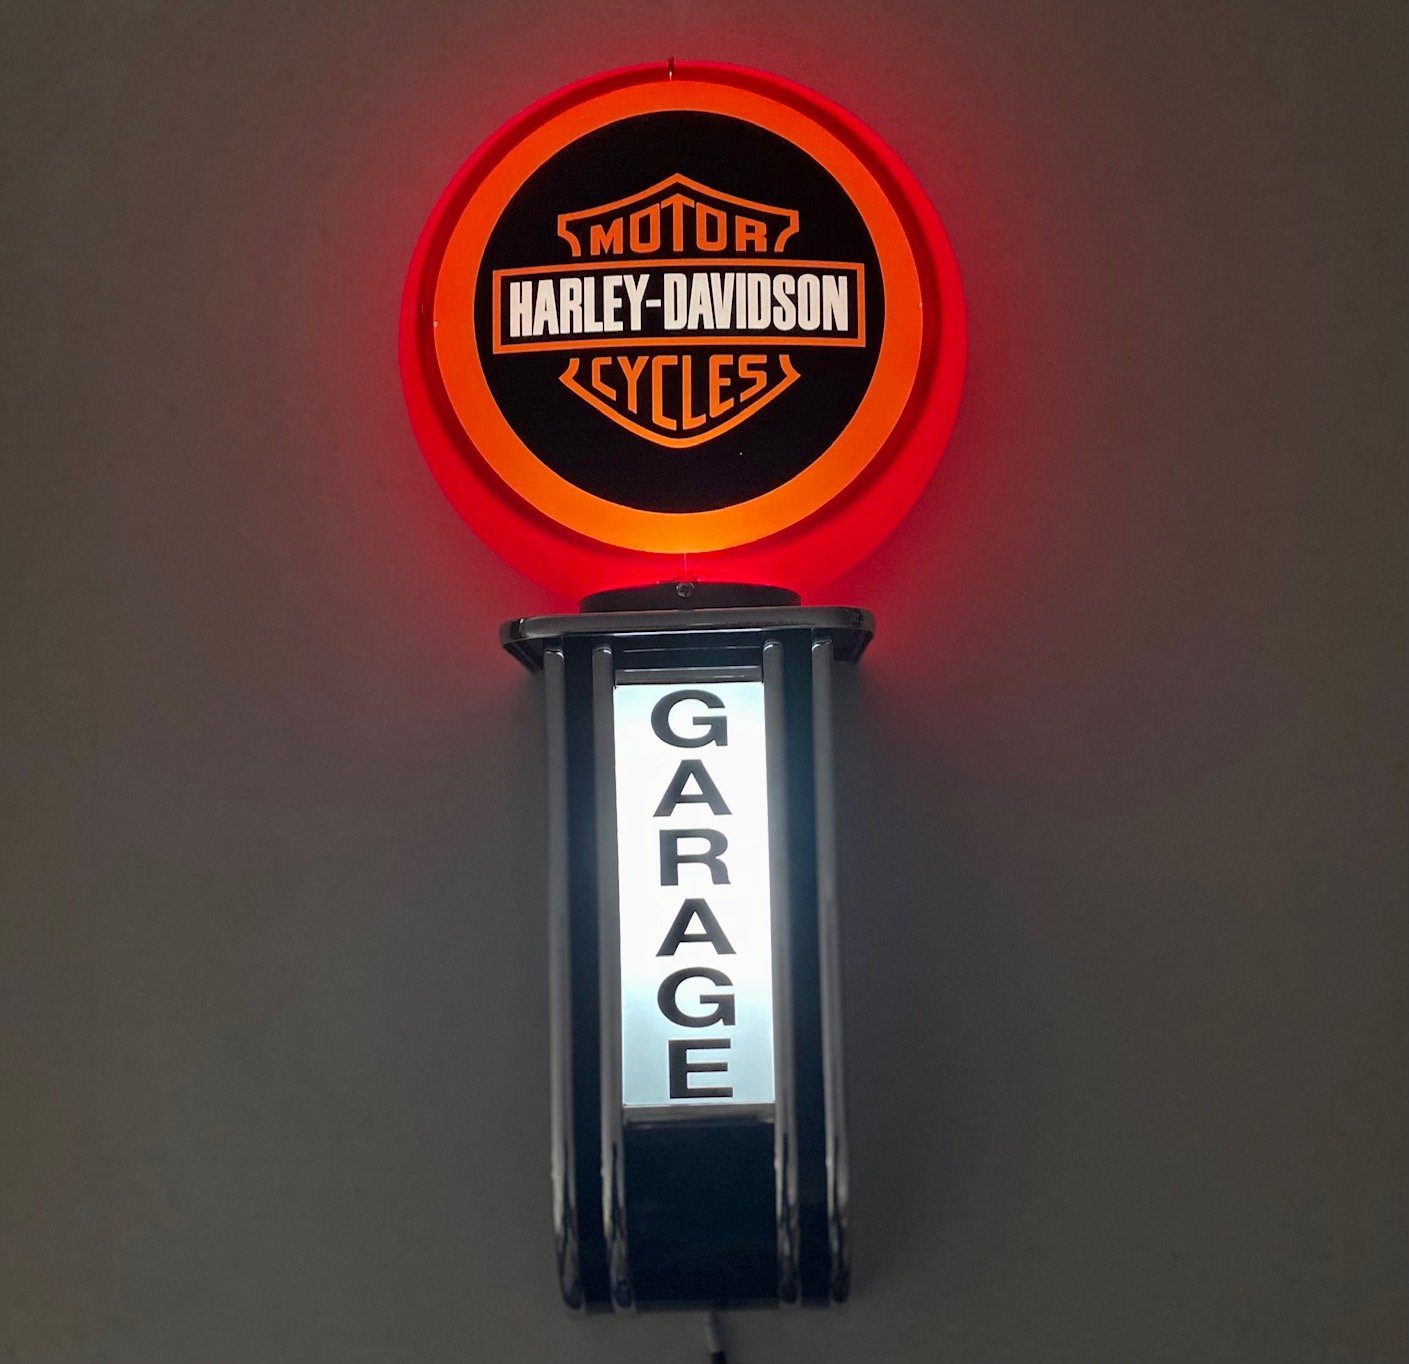 Massive Harley Davidson Shield GARAGE Wall Sign Led Bar Lighting Light RED